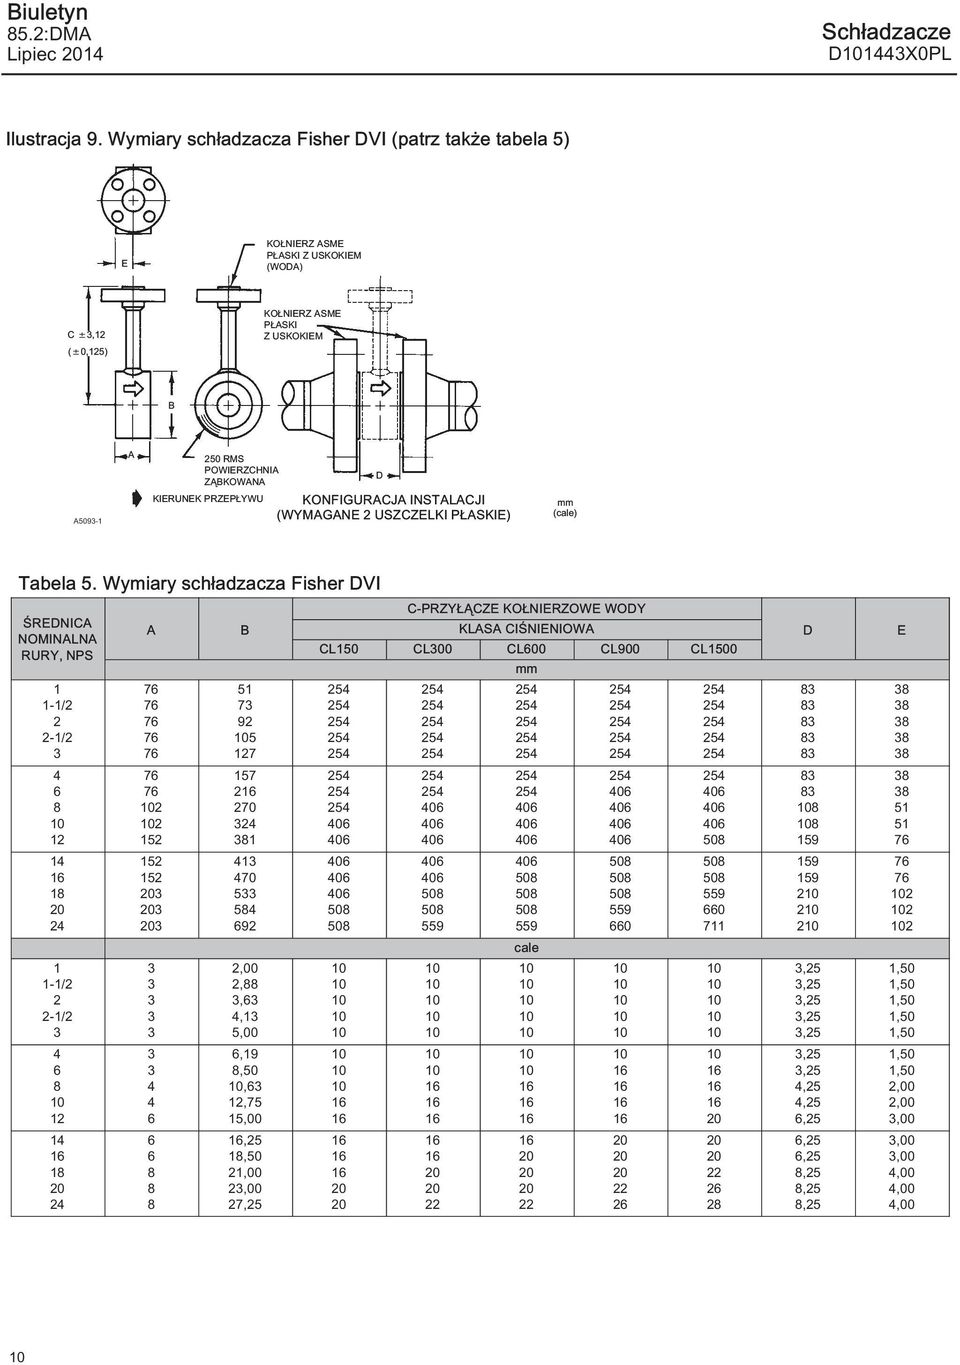 KONFIGURACJA INSTALACJI (WYMAGANE 2 USZCZELKI PŁASKIE) mm (cale) Tabela 5.